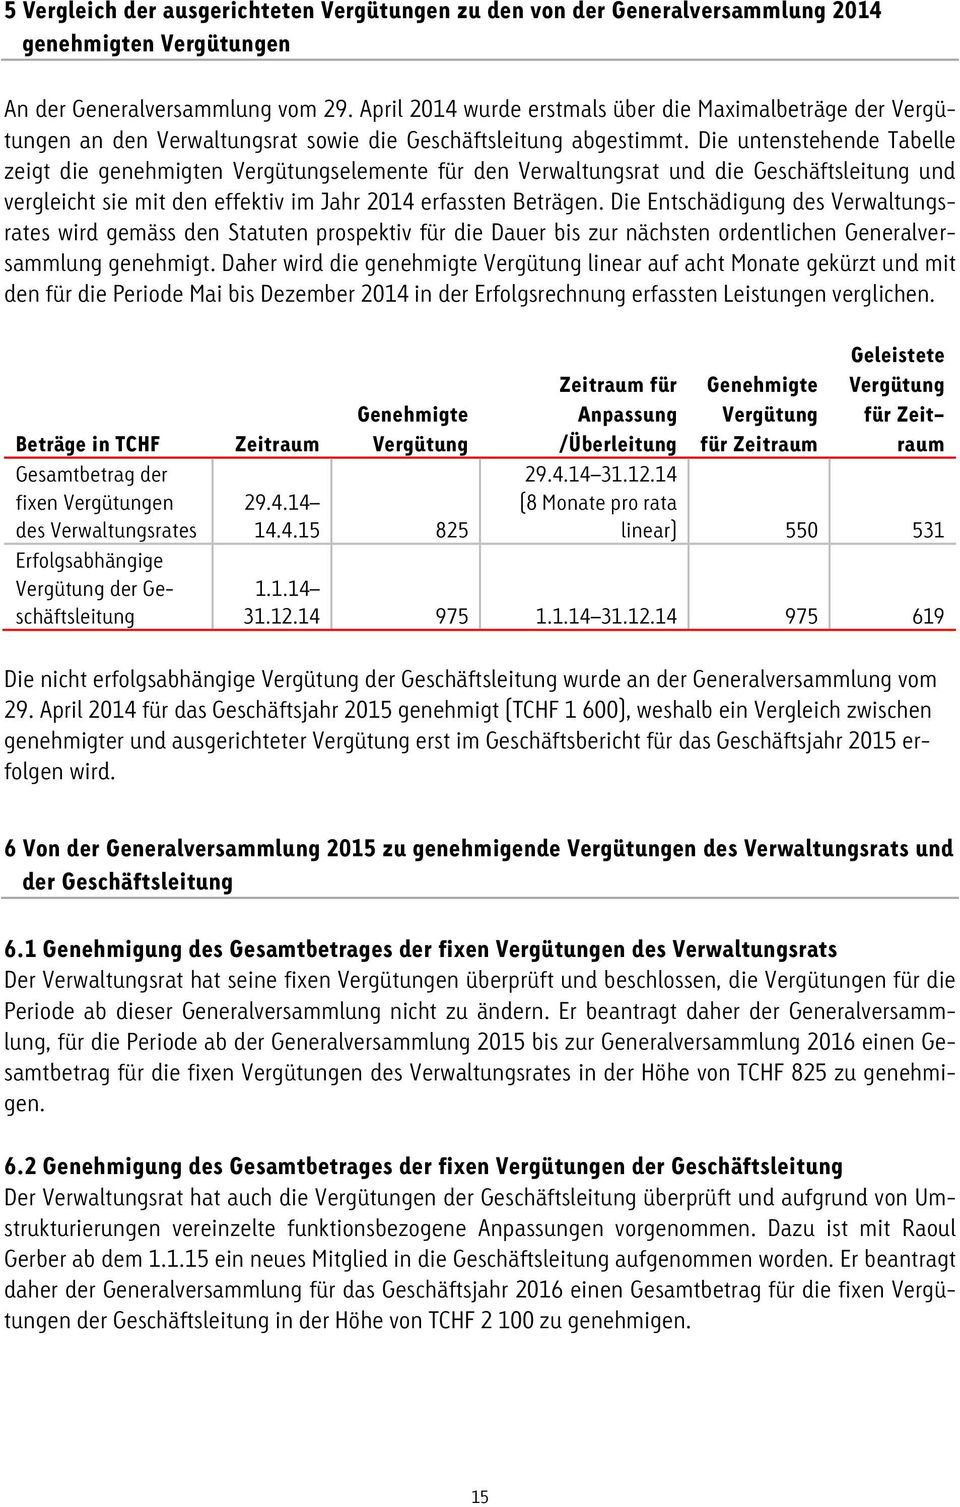 Die untenstehende Tabelle zeigt die genehmigten Vergütungselemente für den Verwaltungsrat und die Geschäftsleitung und vergleicht sie mit den effektiv im Jahr 2014 erfassten Beträgen.